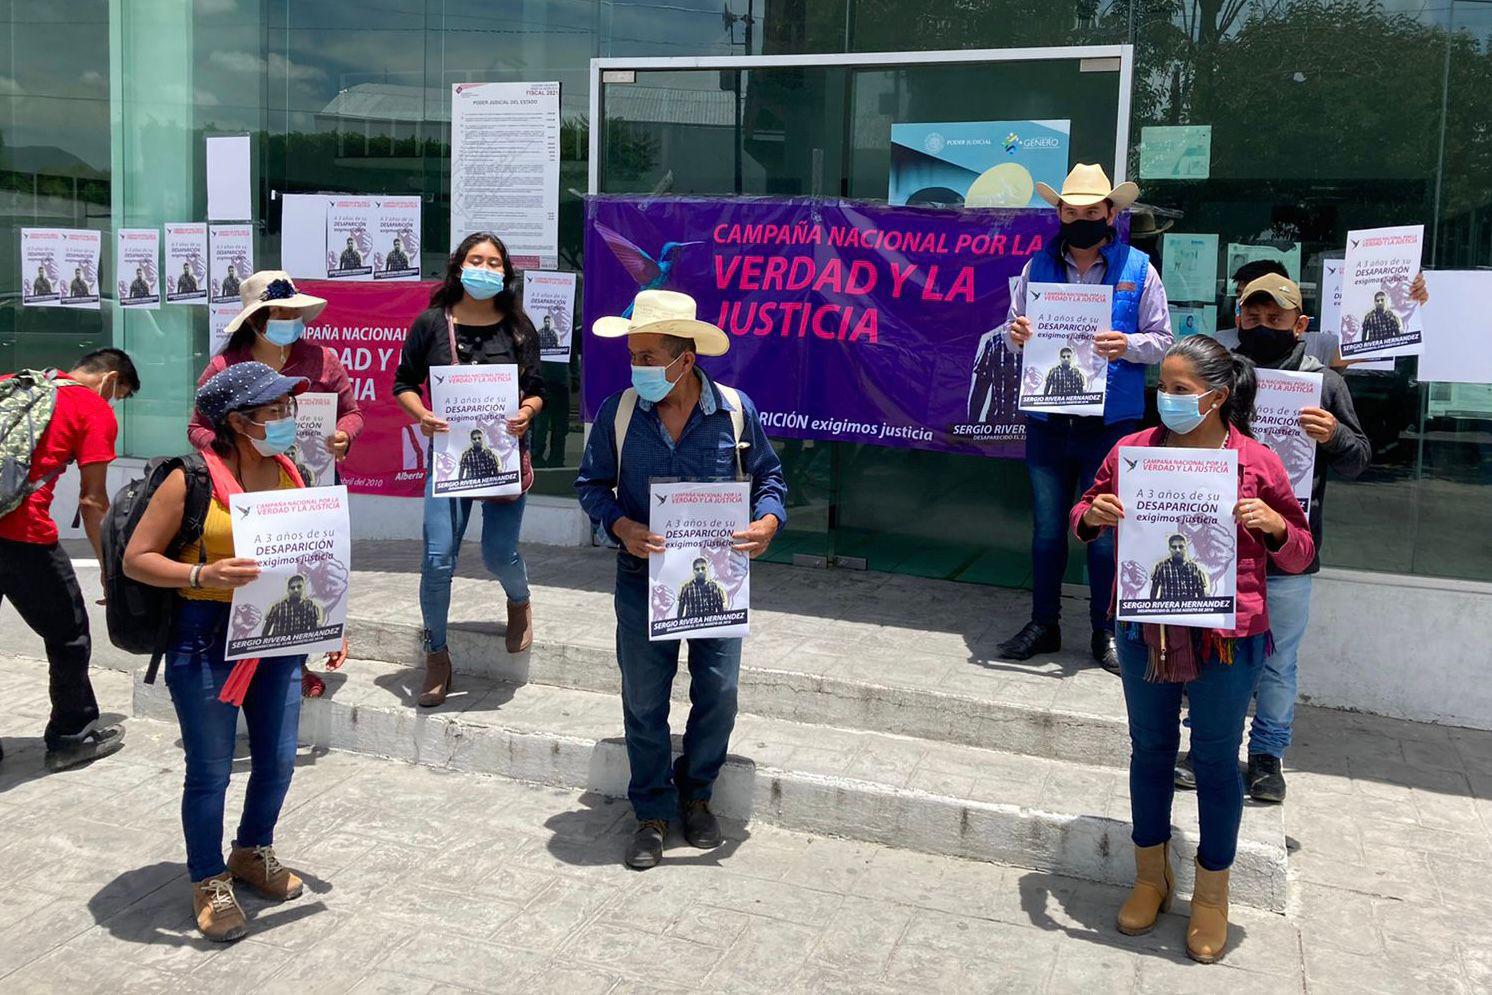 $!Agosto de 2021. Integrantes de la organización MAIZ se manifiestan afuera de la Casa de Justicia de Tehuacán, exigiendo la aparición de su compañero Sergio Rivera.